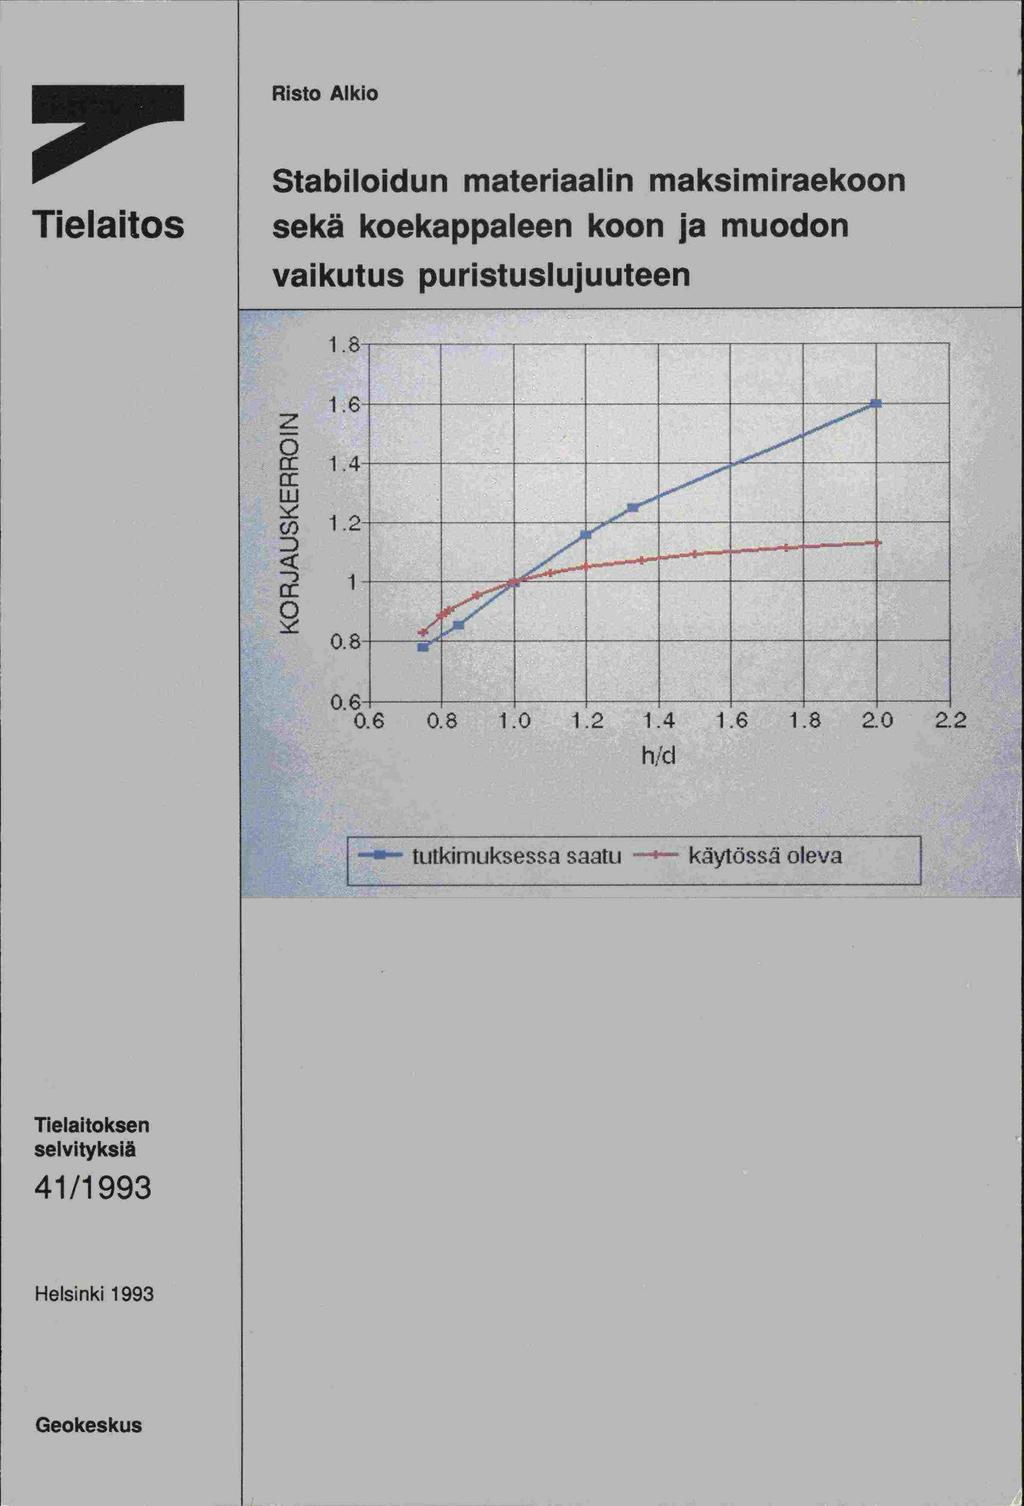 Risto Alkio Tielaitos Stabiloidun materiaalin maksimiraekoon sekä koekappaleen koon ja muodon vaikutus puristuslujuuteen z cci.